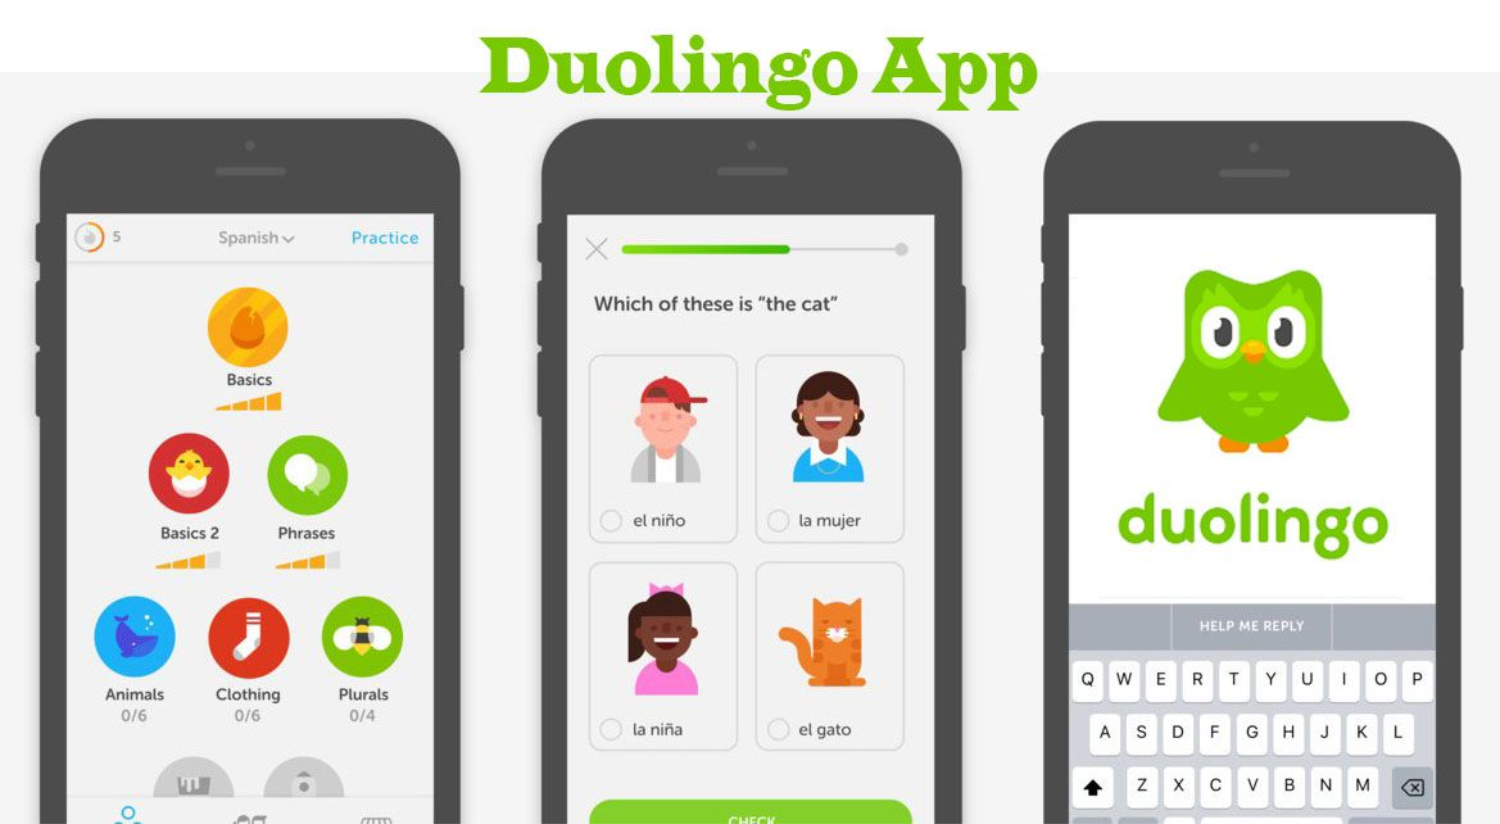 Duolingo learn. Duolingo Скриншоты приложения. Интерфейс приложения Дуолинго. Ljekbyuf. Мобильное приложение Duolingo.